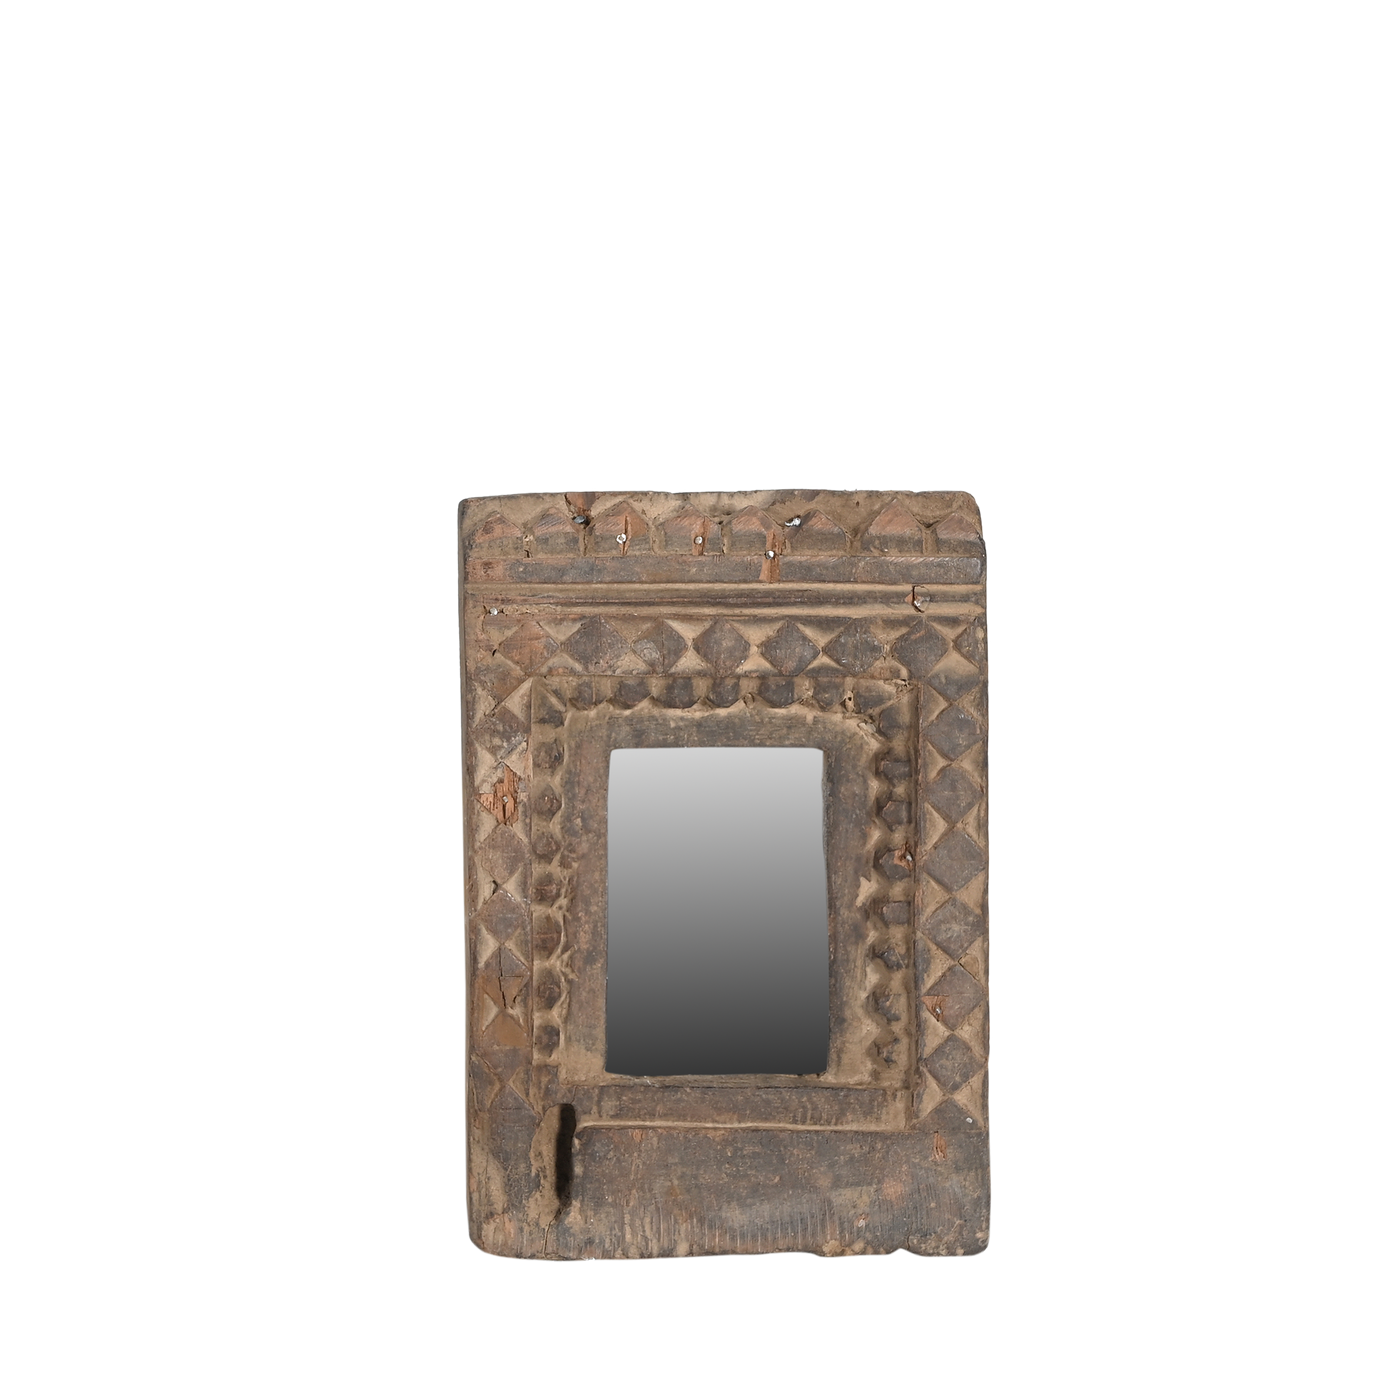 Mandir - Temple mirror n°29